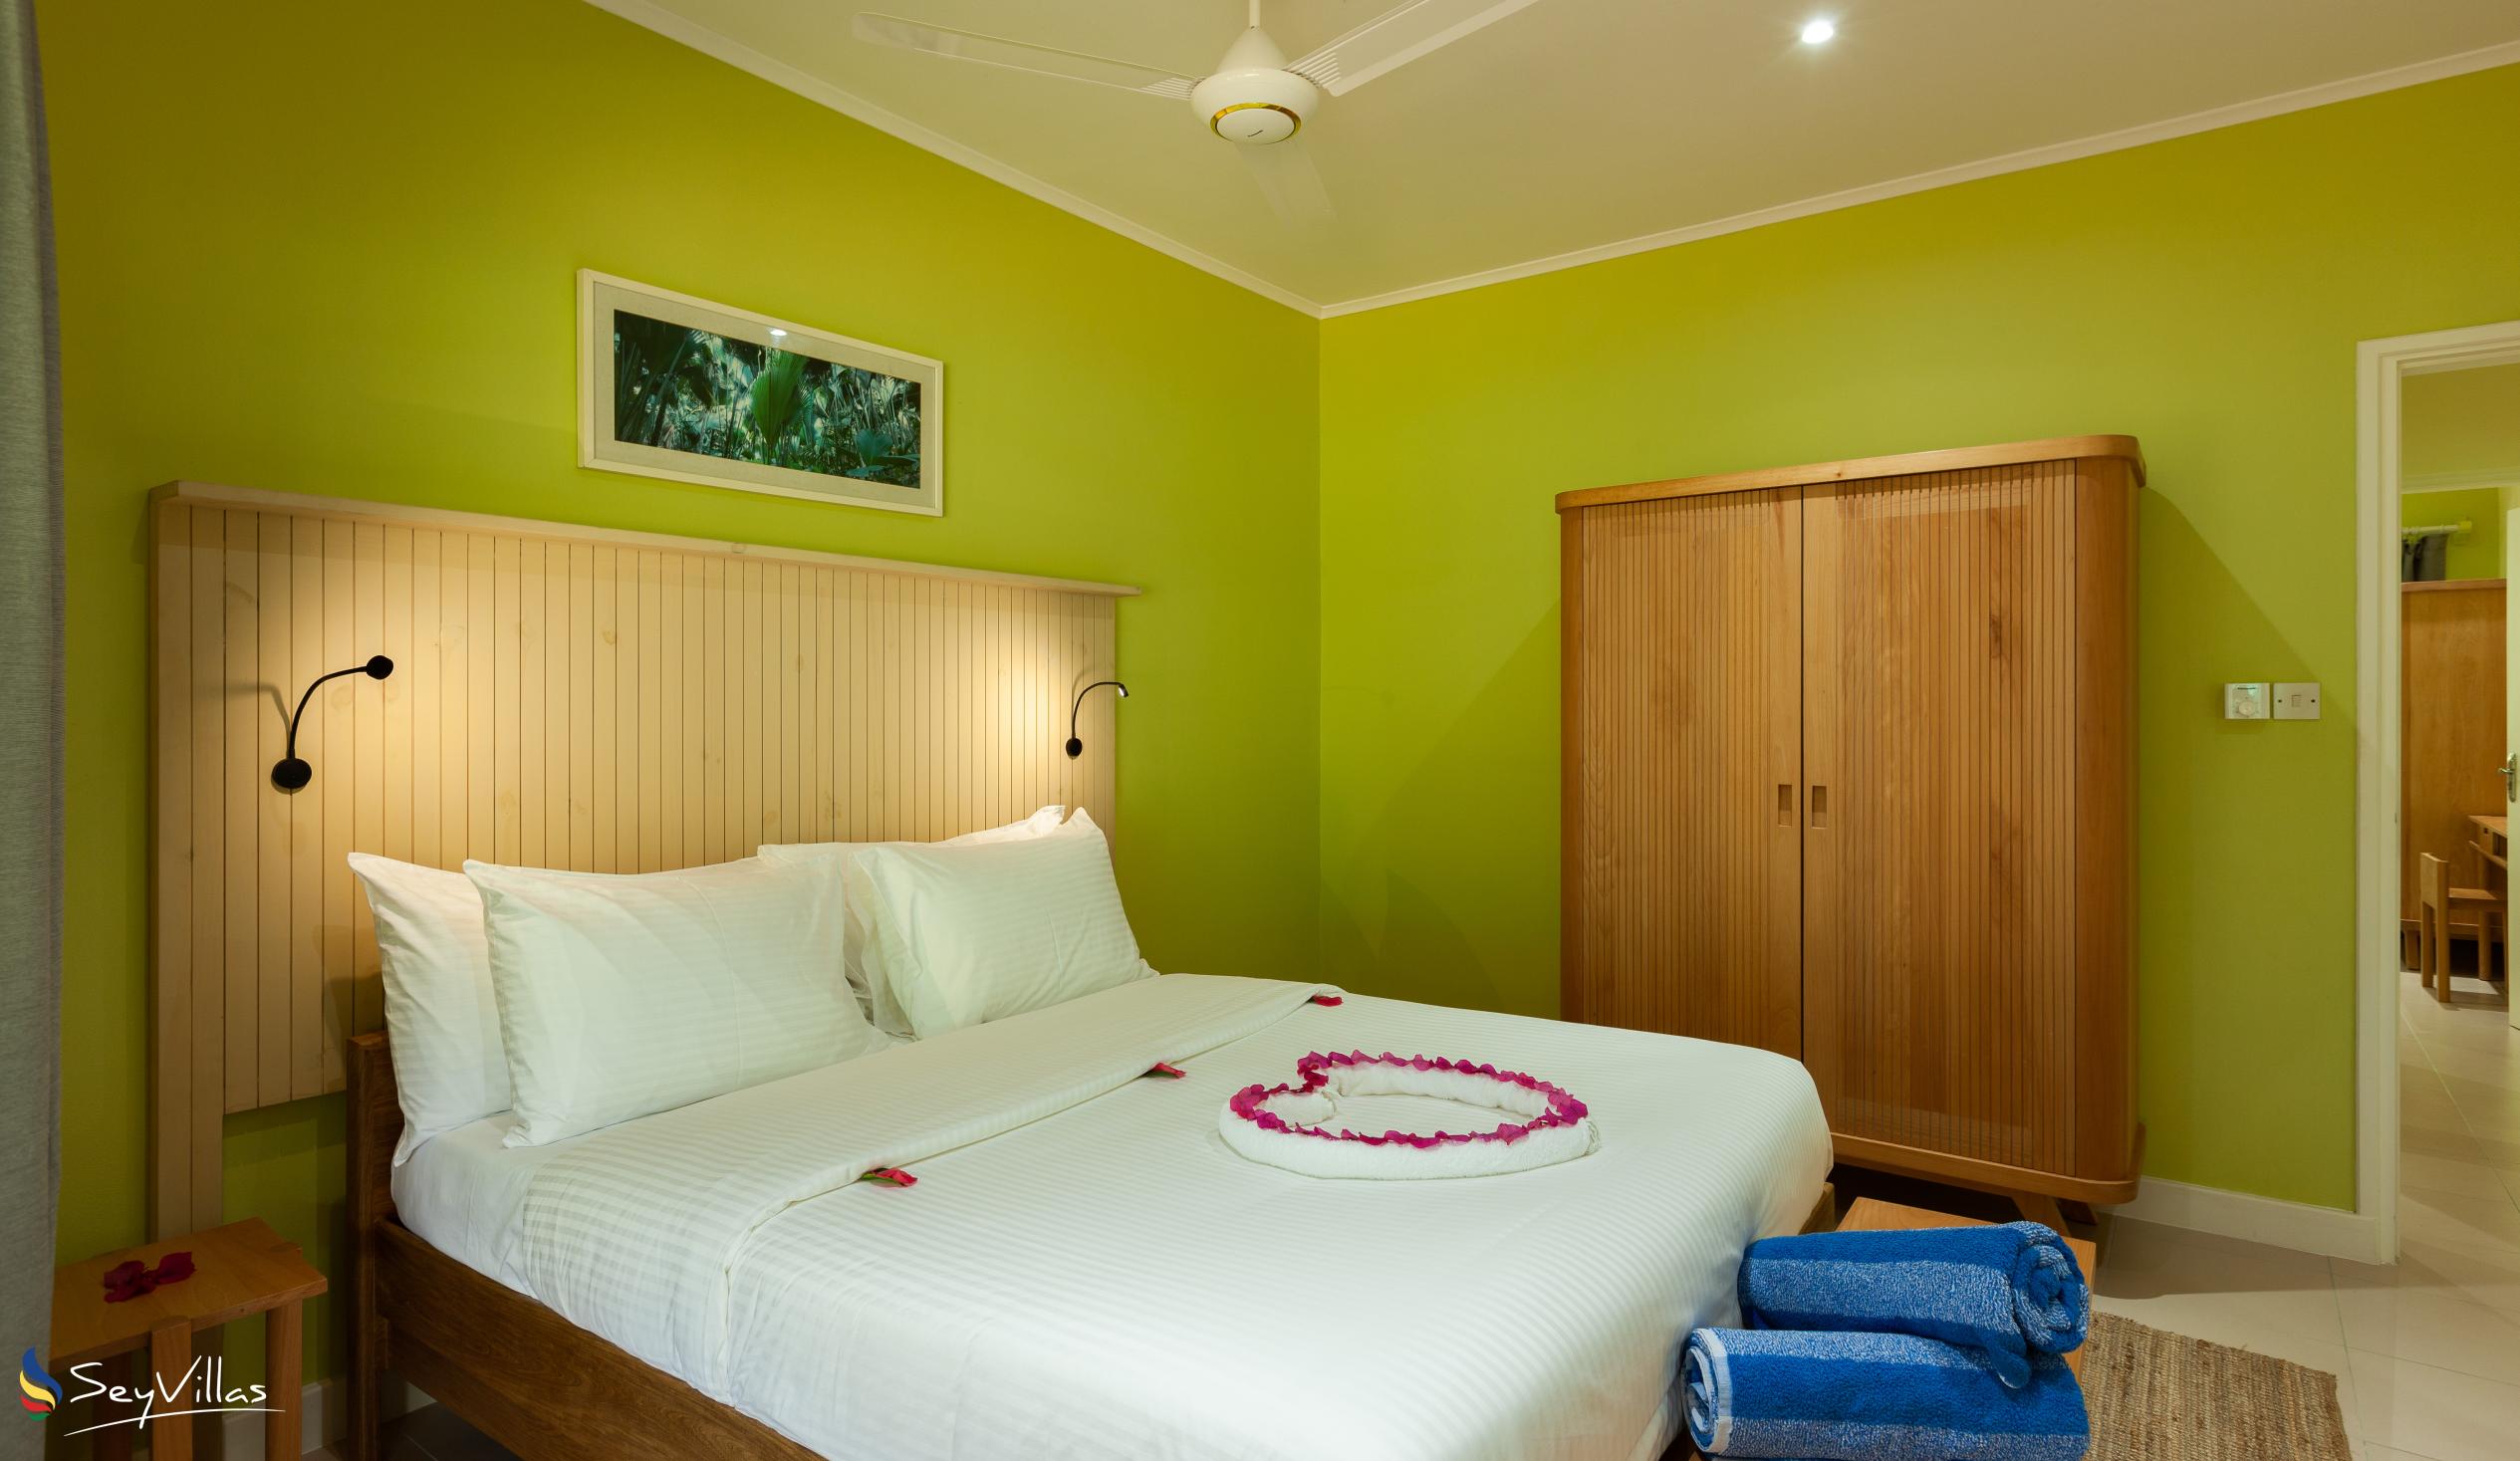 Foto 47: Residence Praslinoise - Familienappartement mit 2 Schlafzimmern (EG) - Praslin (Seychellen)